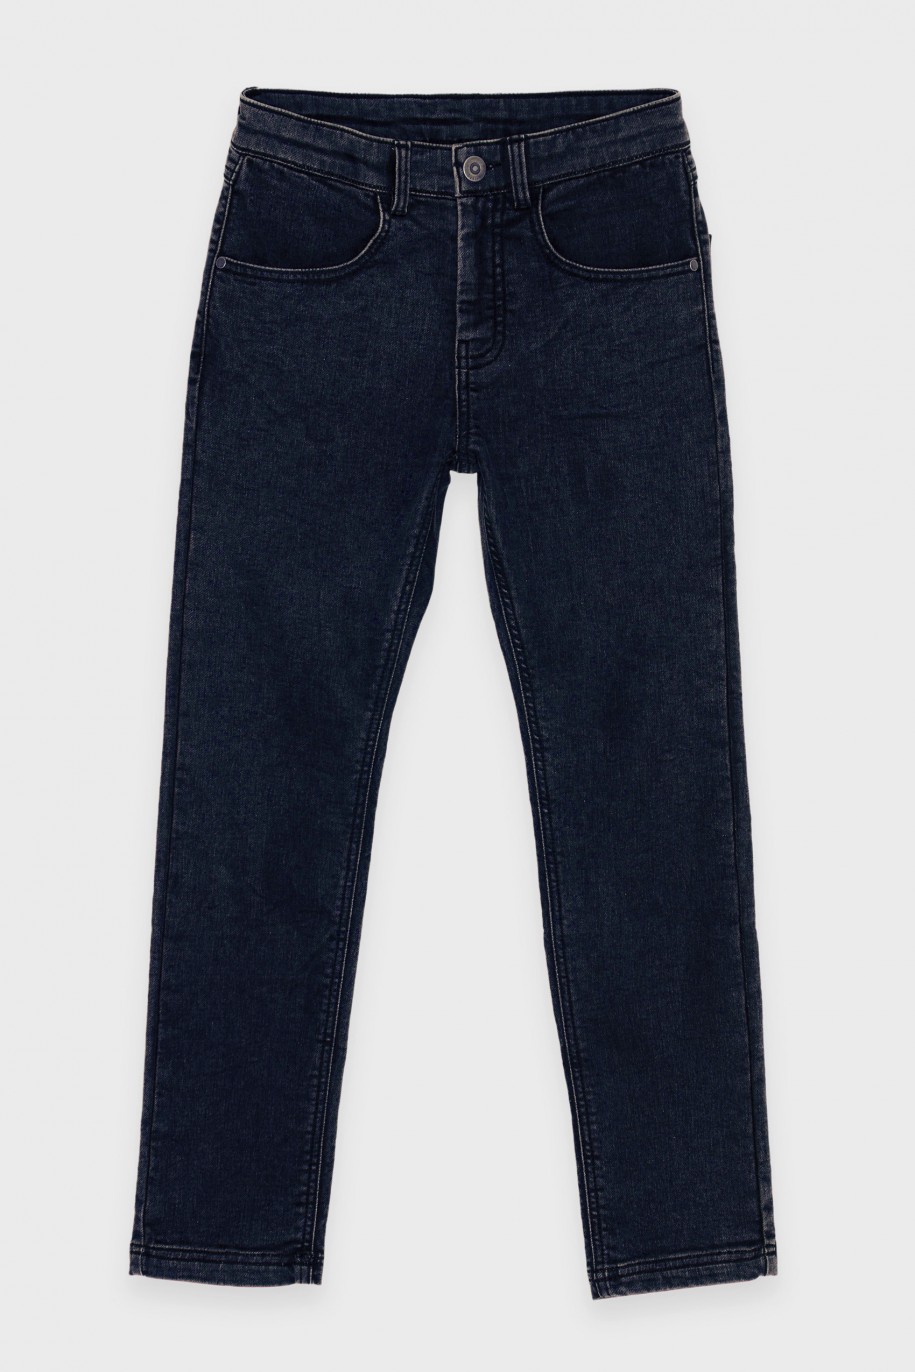 Granatowe jeansy z wąskimi nogawkami - 46545